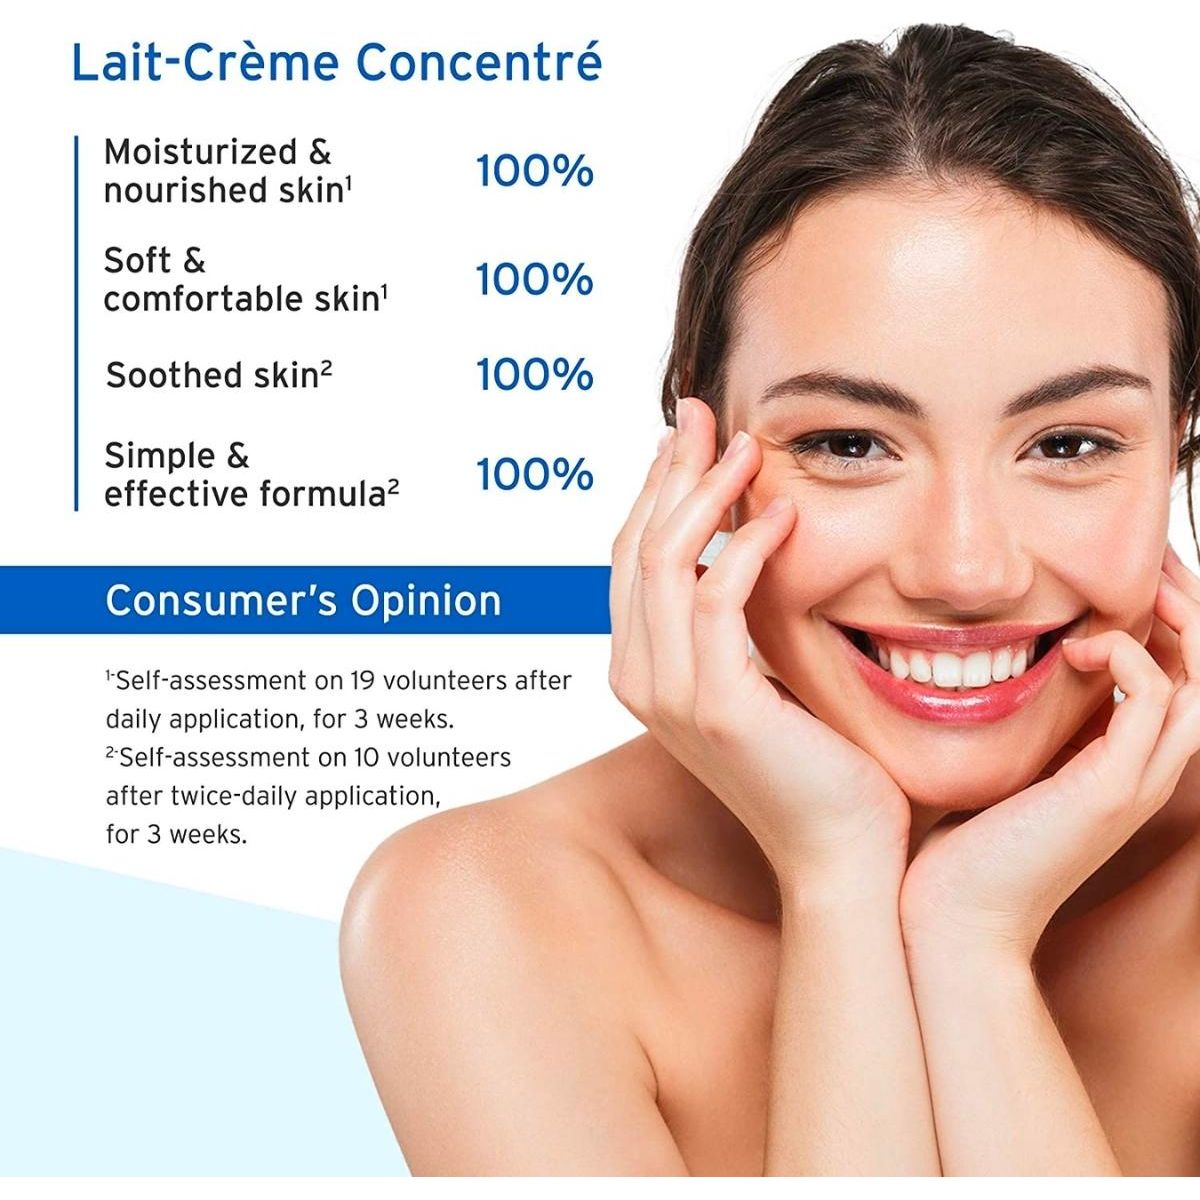 Embryolisse | Lait-Crème Concentré | 75ml - DG International Ventures Limited